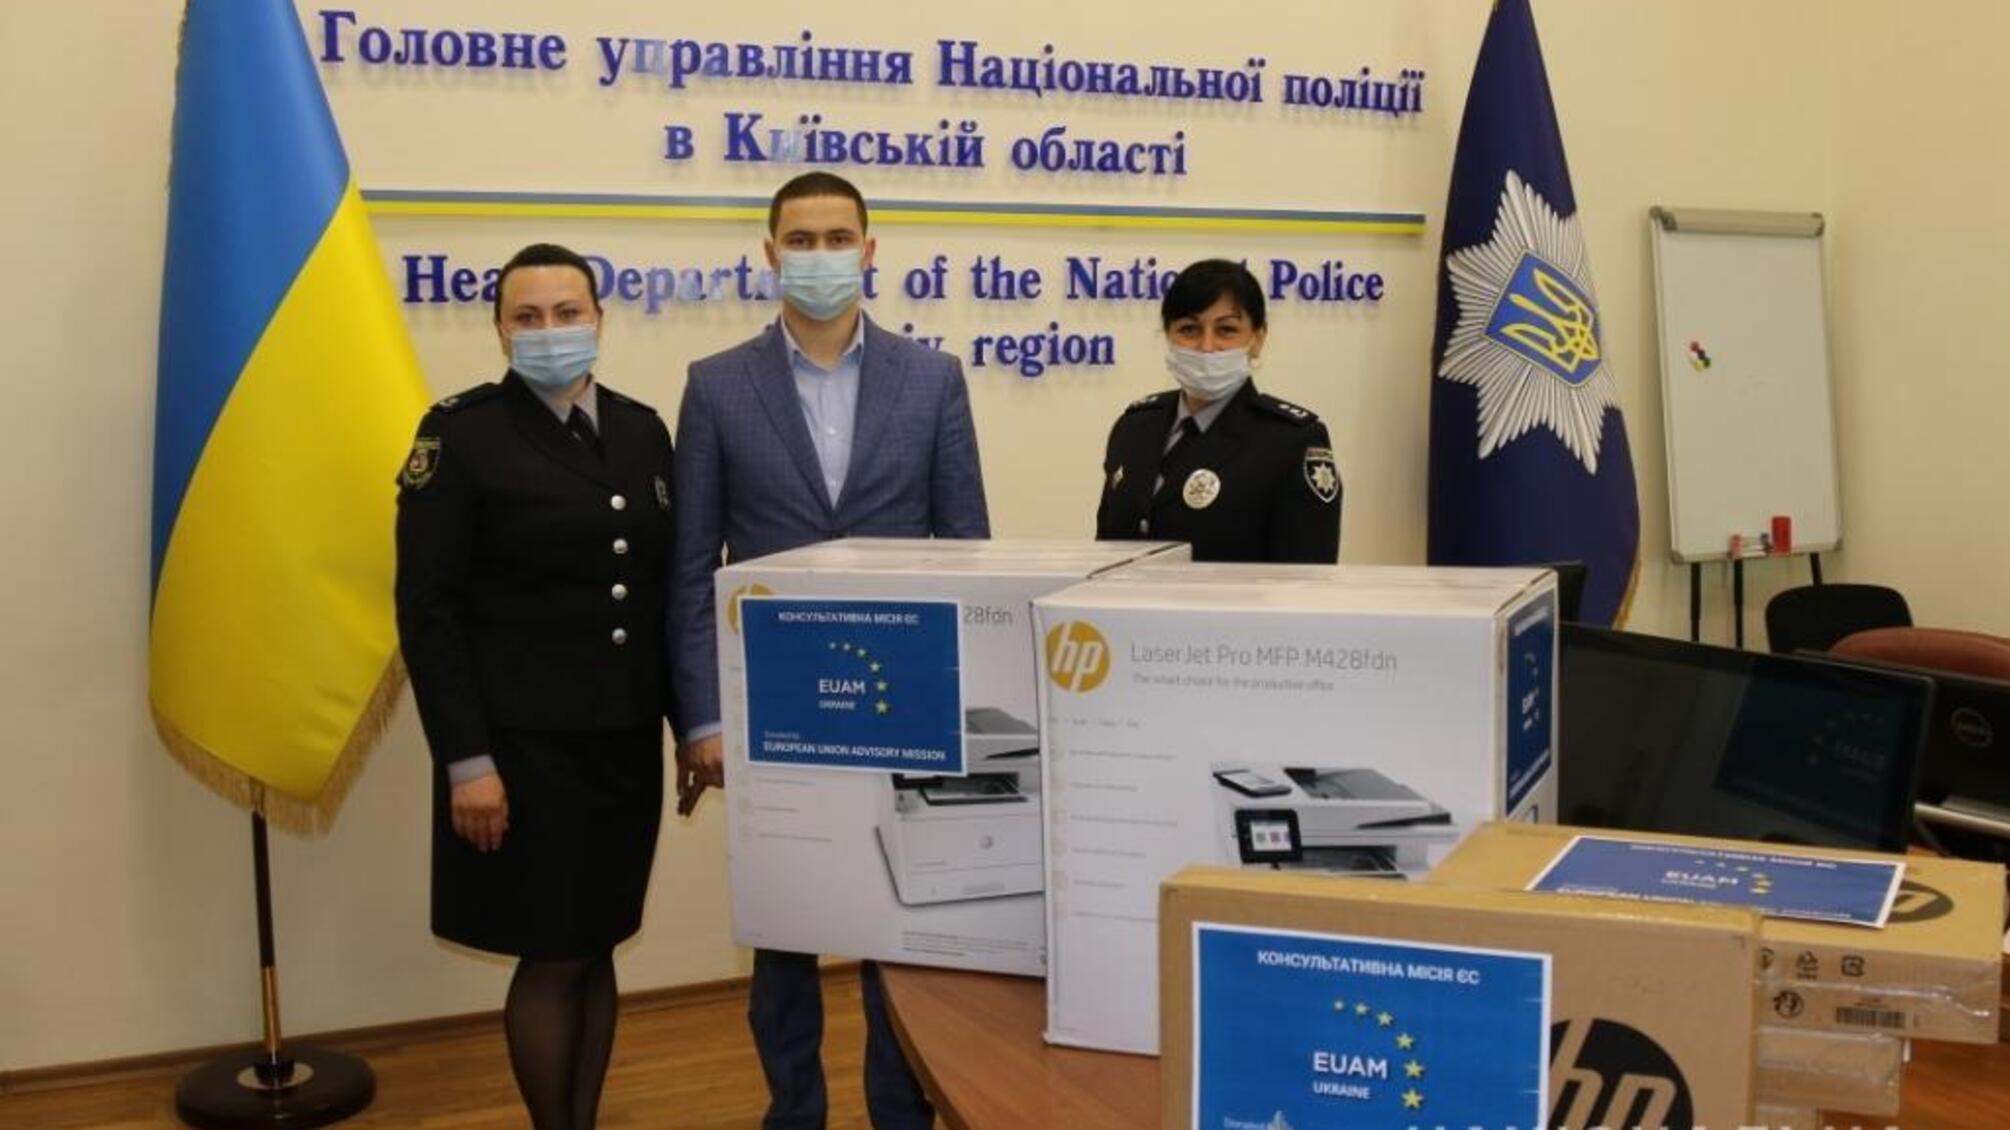 Представники Консультативної місії ЄС у рамках надання міжнародної технічної допомоги забезпечили підрозділи поліції Київщини комп’ютерним обладнанням